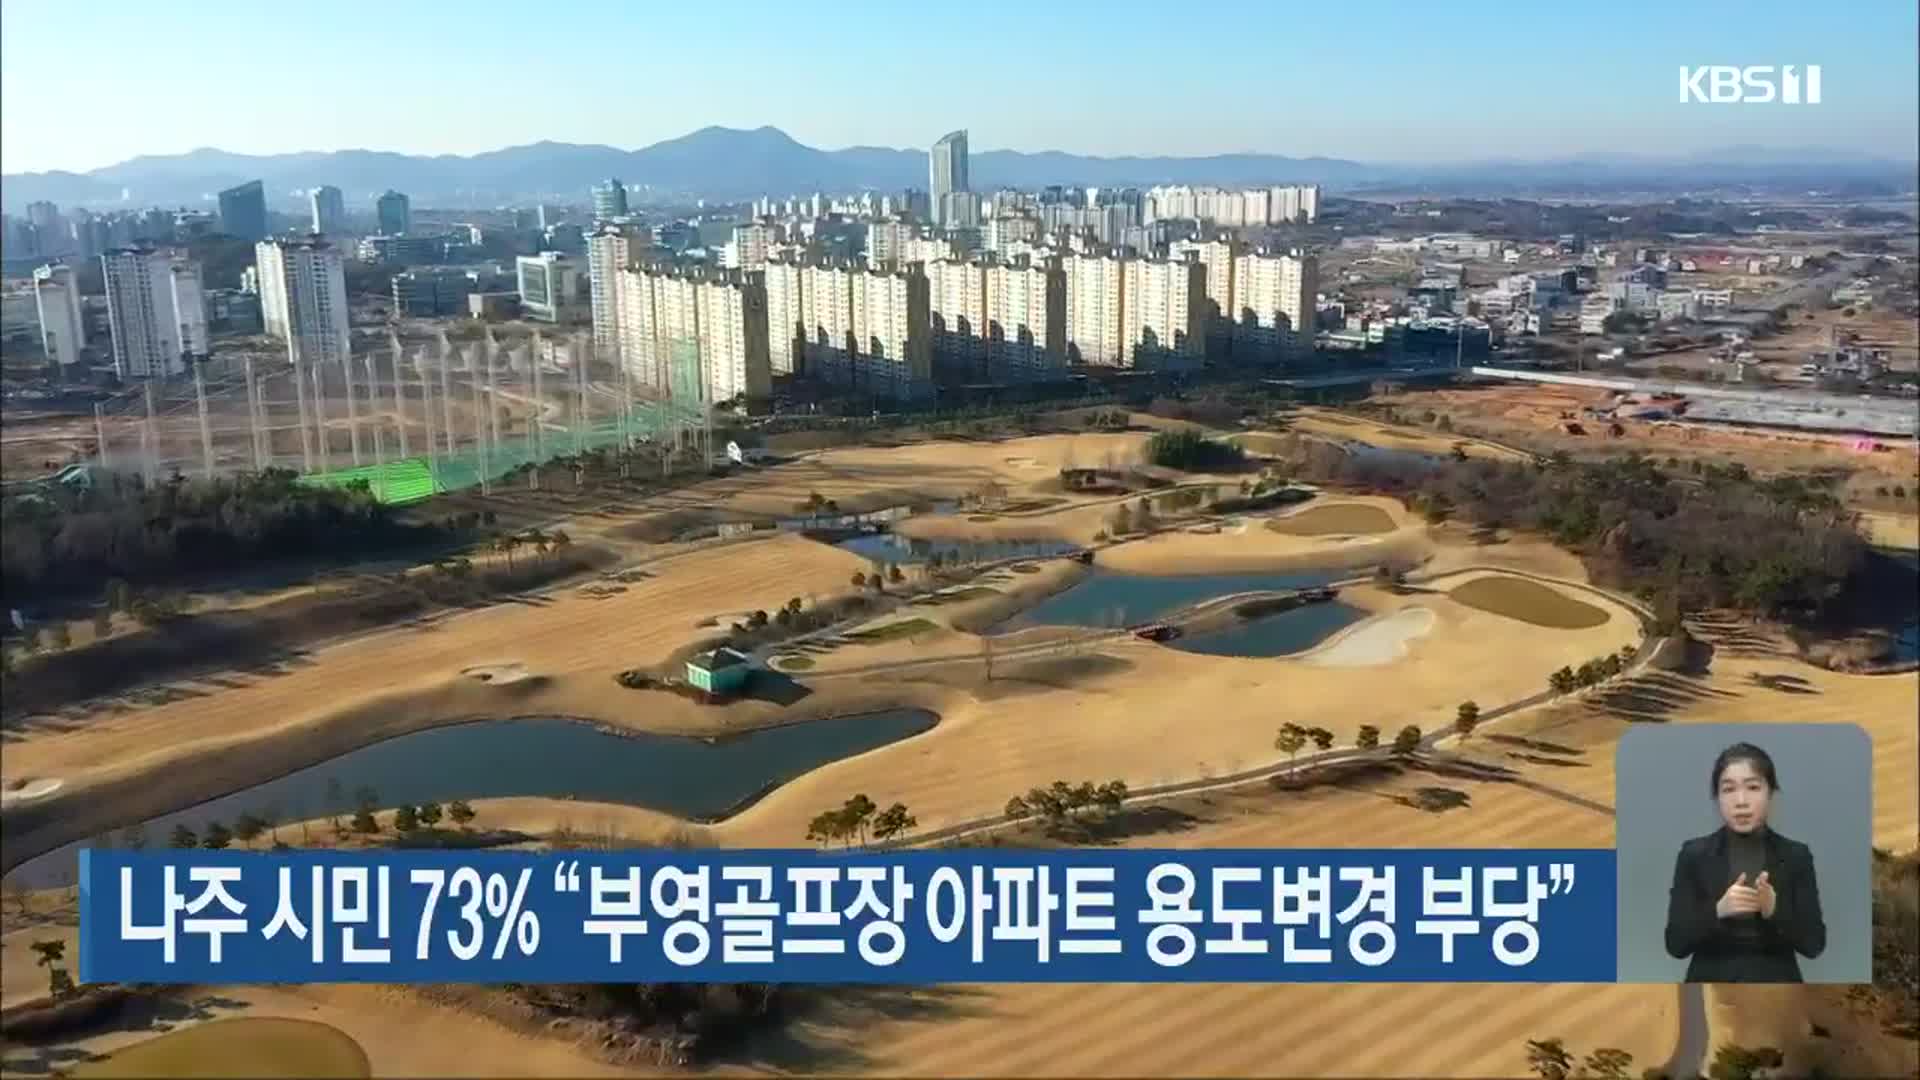 나주 시민 73% “부영골프장 아파트 용도변경 부당”